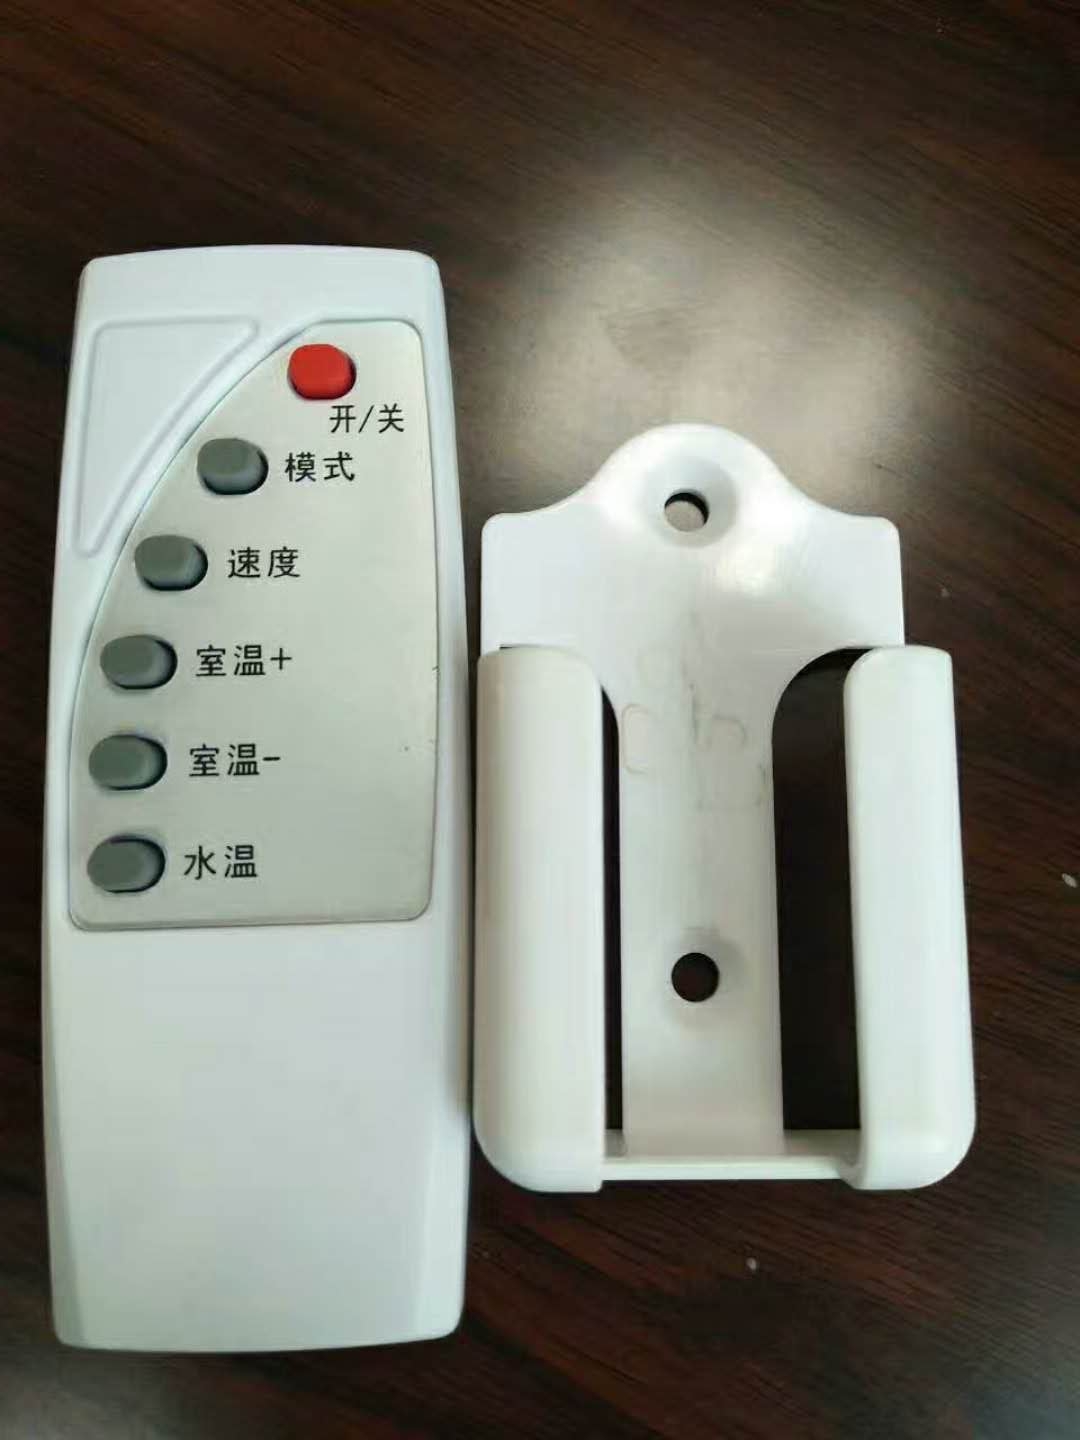 磁能热水器遥控器 4-8键遥控器 红外遥控器(图1)